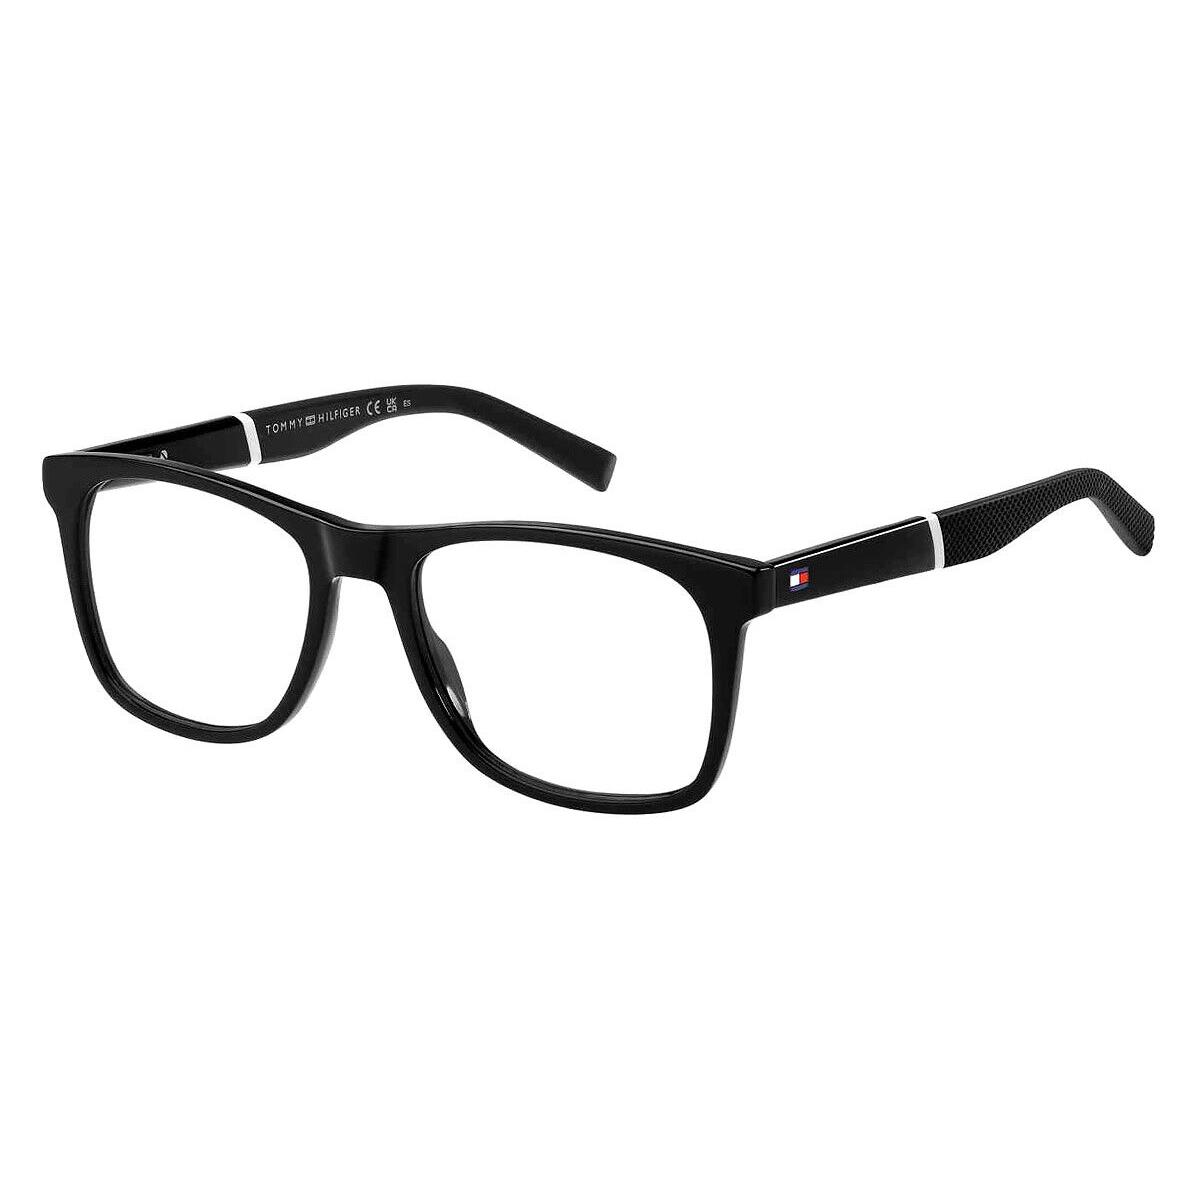 Tommy Hilfiger Thf Eyeglasses Men Black 53mm - Frame: Black, Lens: Demo